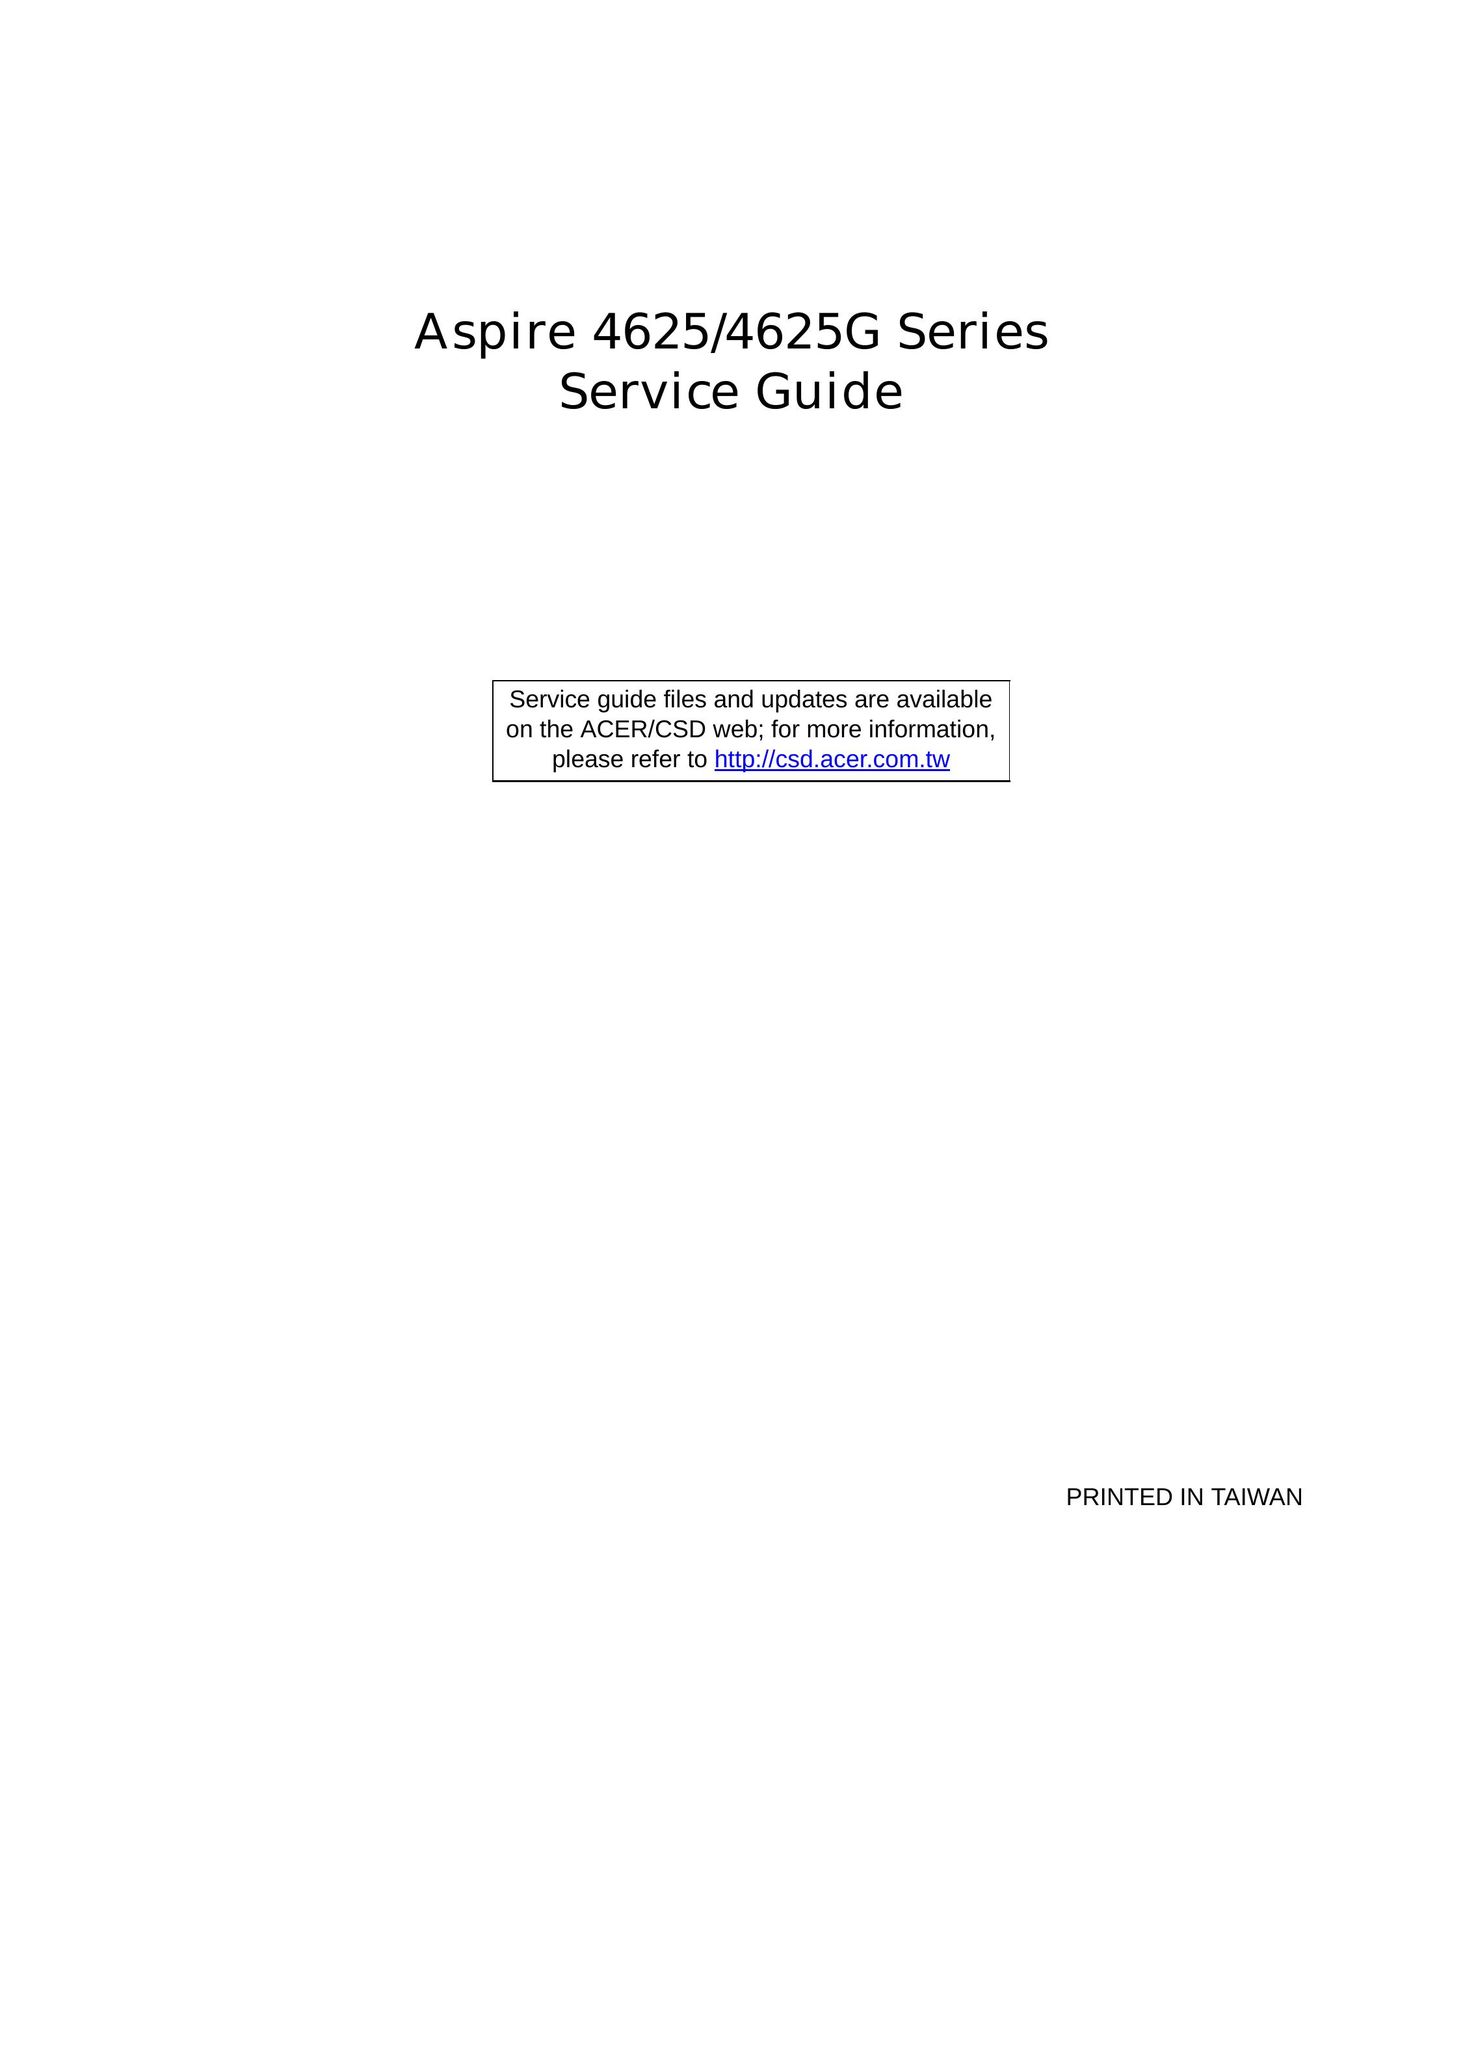 Aspire Digital 4625 Laptop User Manual